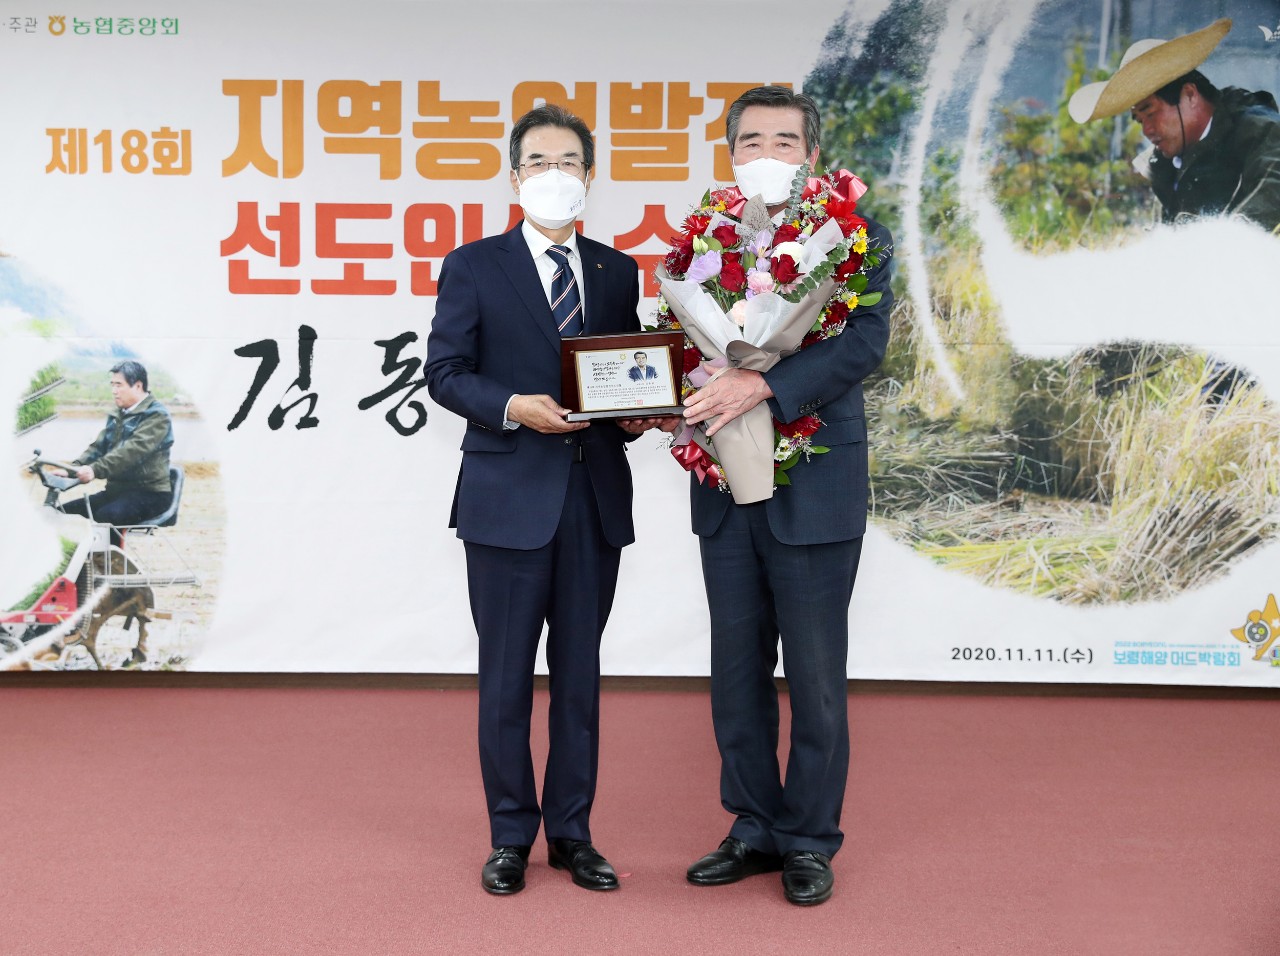 보령시는 12일 김동일 보령시장이 지역 농업발전 및 농업인 삶의 질 향상 공로로 NH농협으로부터 지역농업발전 선도인상을 받았다고 밝혔다. 